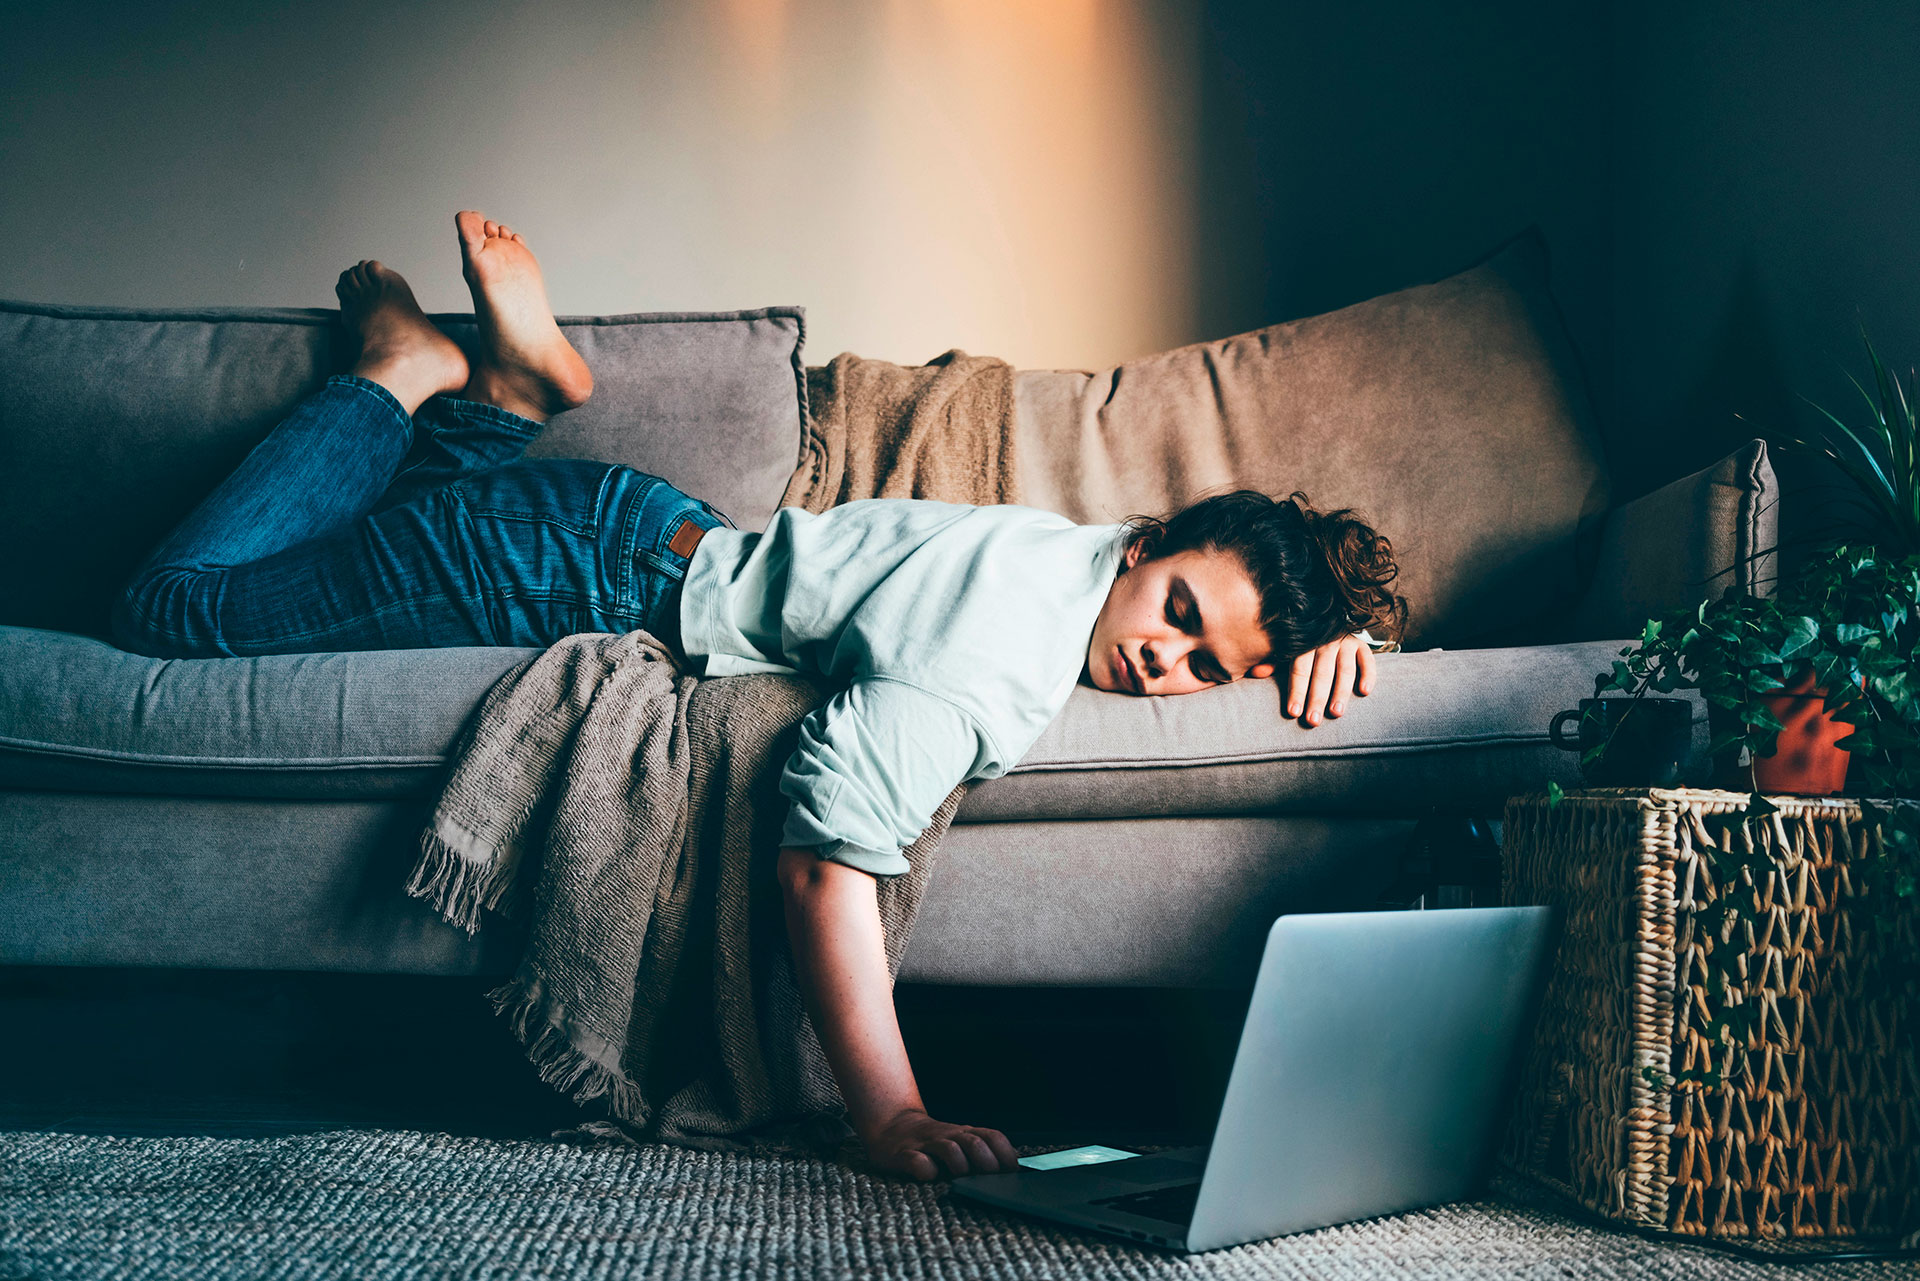 La fatiga o cansancio extremo es un síntoma presente en asintomáticos que padecieron la afección sin saberlo (Shutterstock)